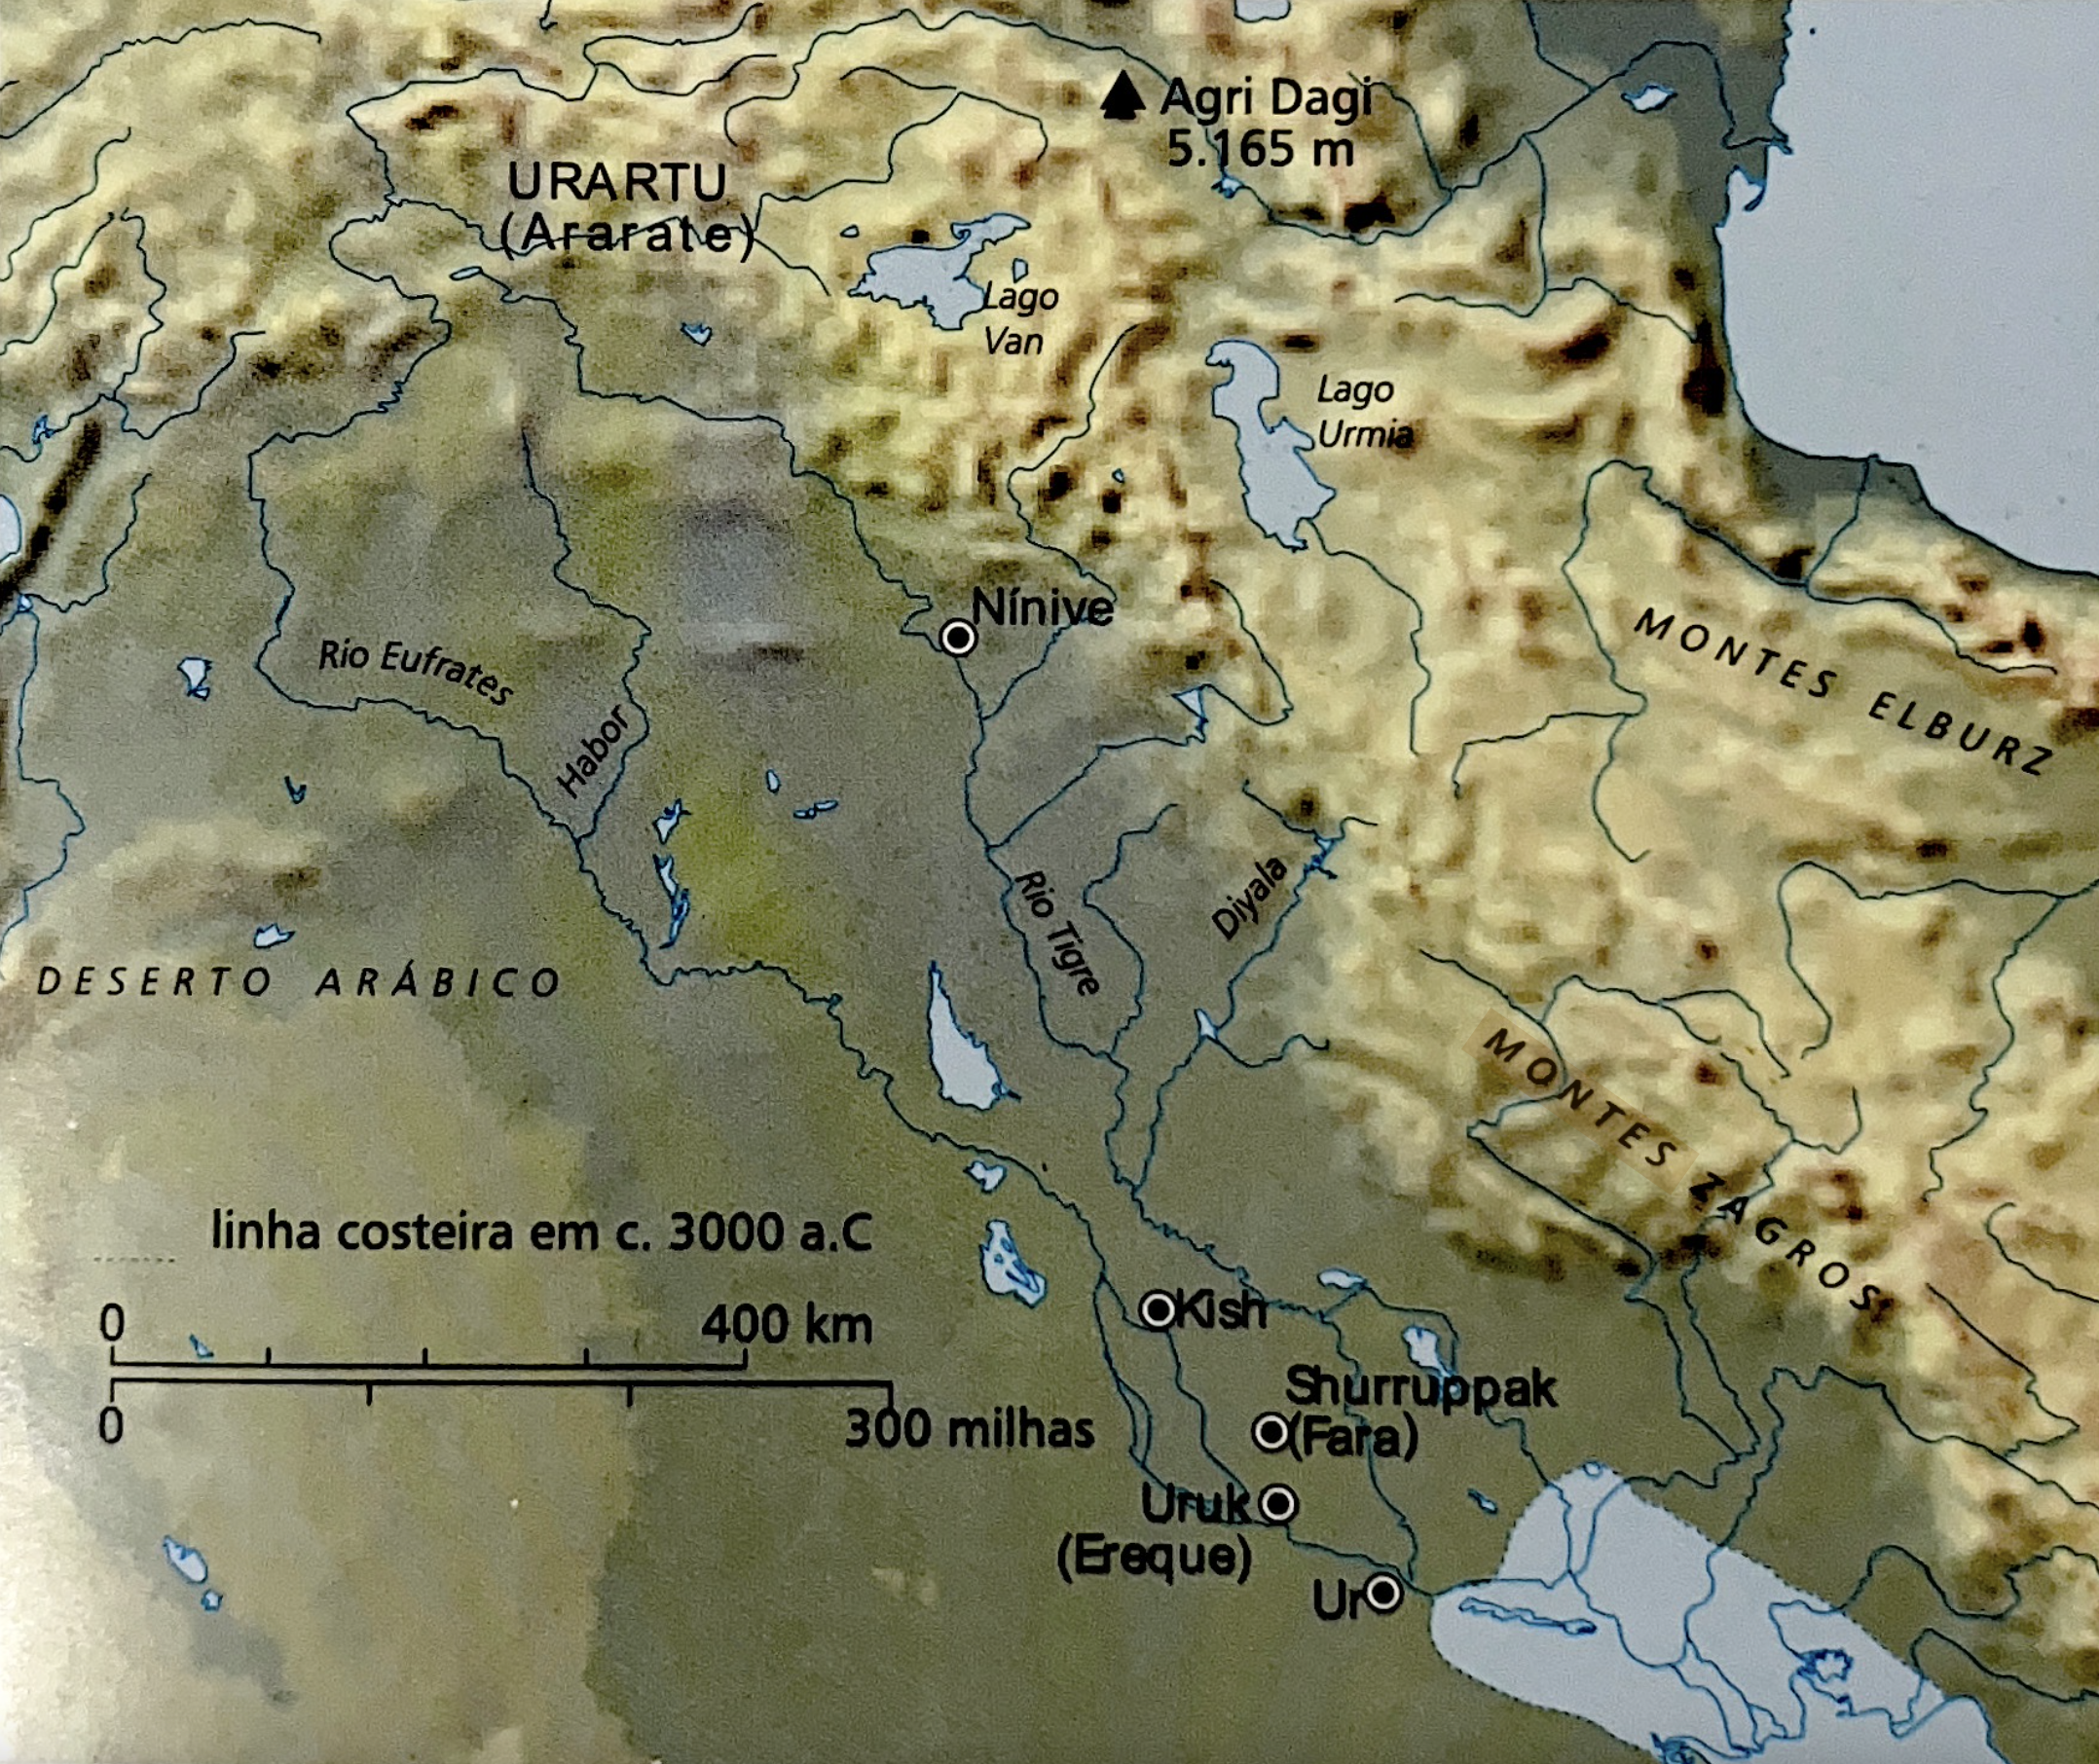 Lugares associados às histórias do dilúvio encontradas na Mesopotâmia e em Gênesis.